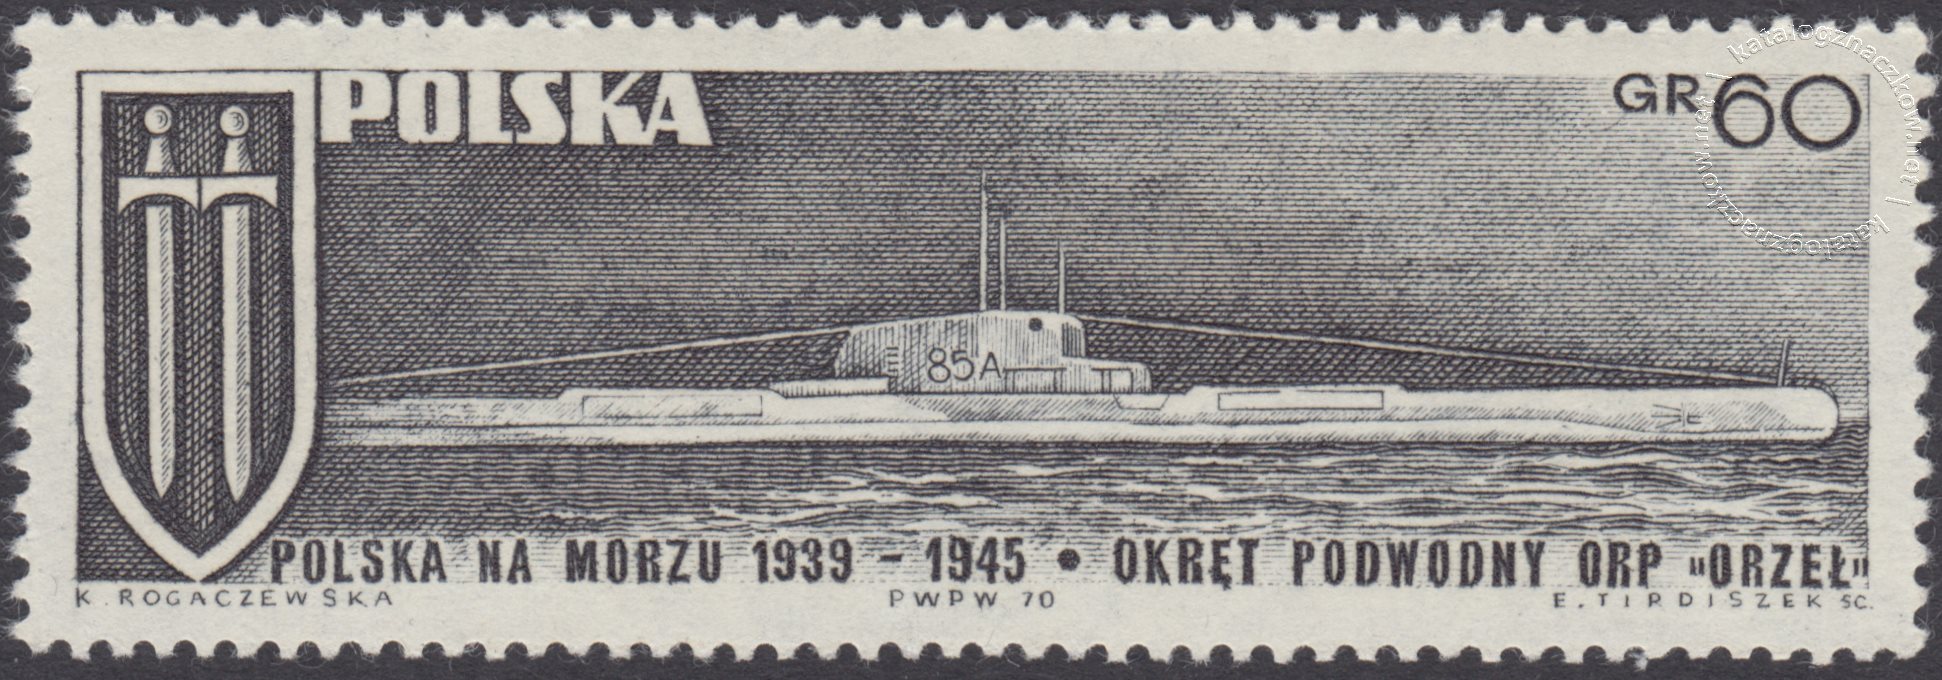 Polska na morzu 1939-1945 znaczek nr 1883